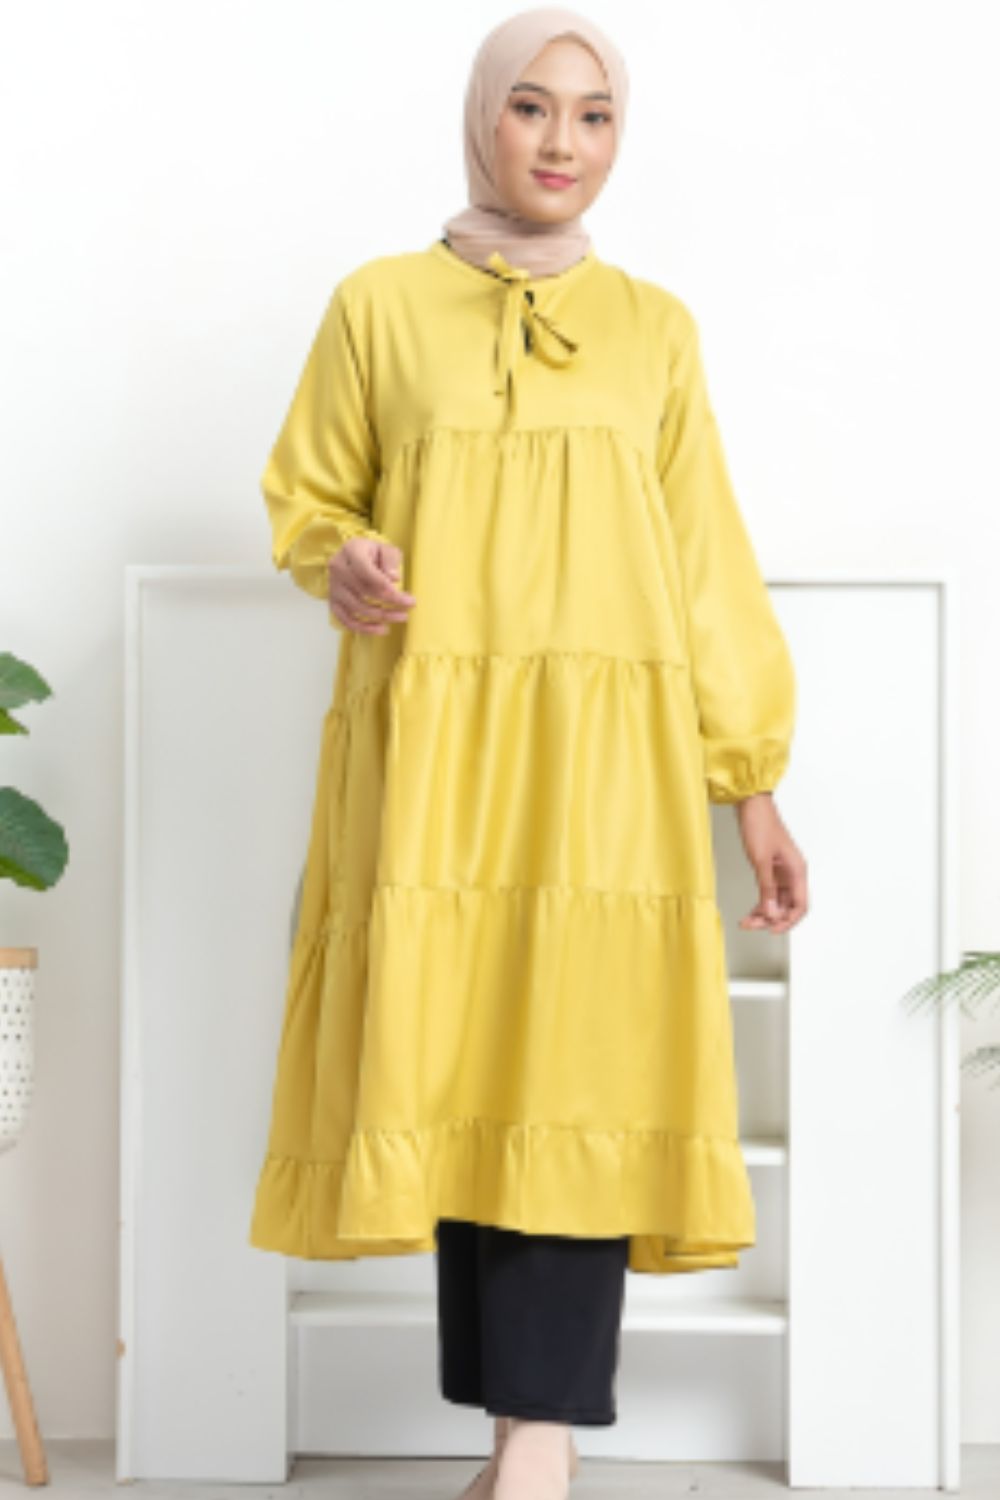 Baju Warna Lemon Cocok Dengan Jilbab Warna Apa